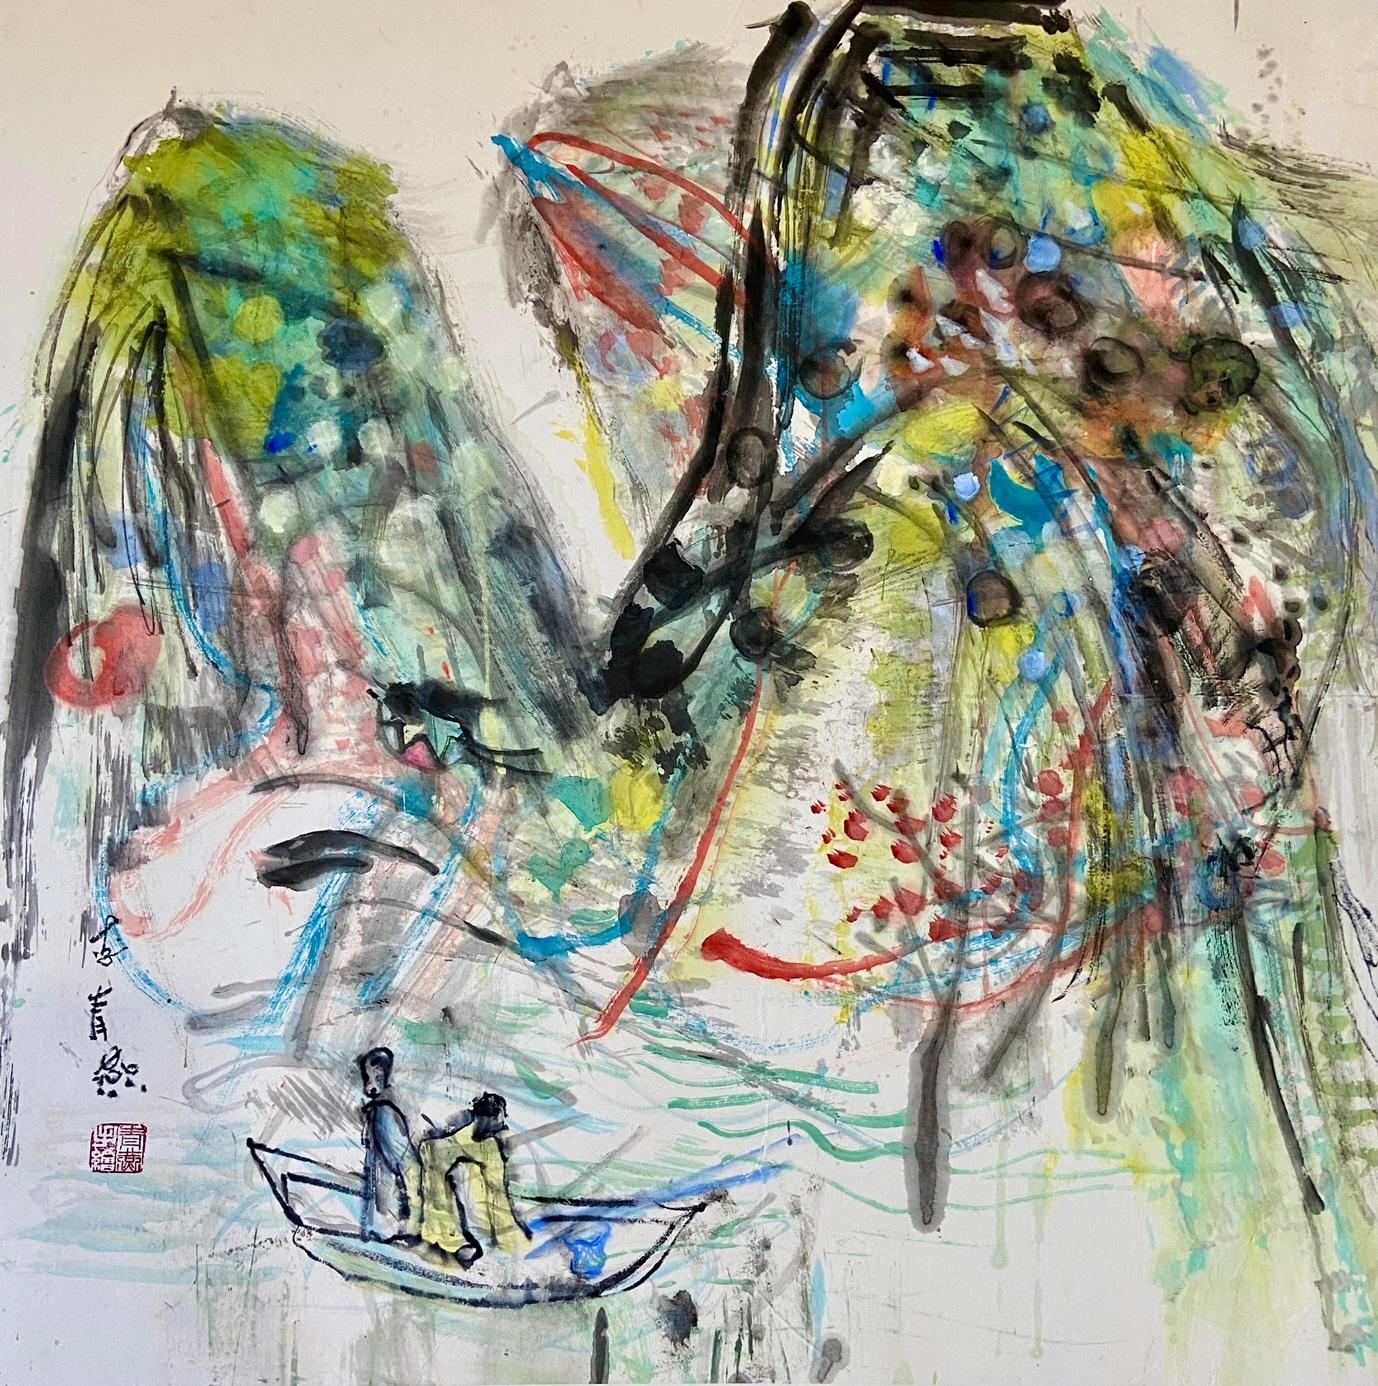 Tusche & Aquarell auf Reispapier , Gerahmt 80 x 80 x 5 cm

Li Qingyan ist eine 1972 geborene chinesische Künstlerin, die in Peking, China, lebt und arbeitet. Qingyan ist von Beruf Maler. Sie ist Mitglied der China Contemporary Women's Painting